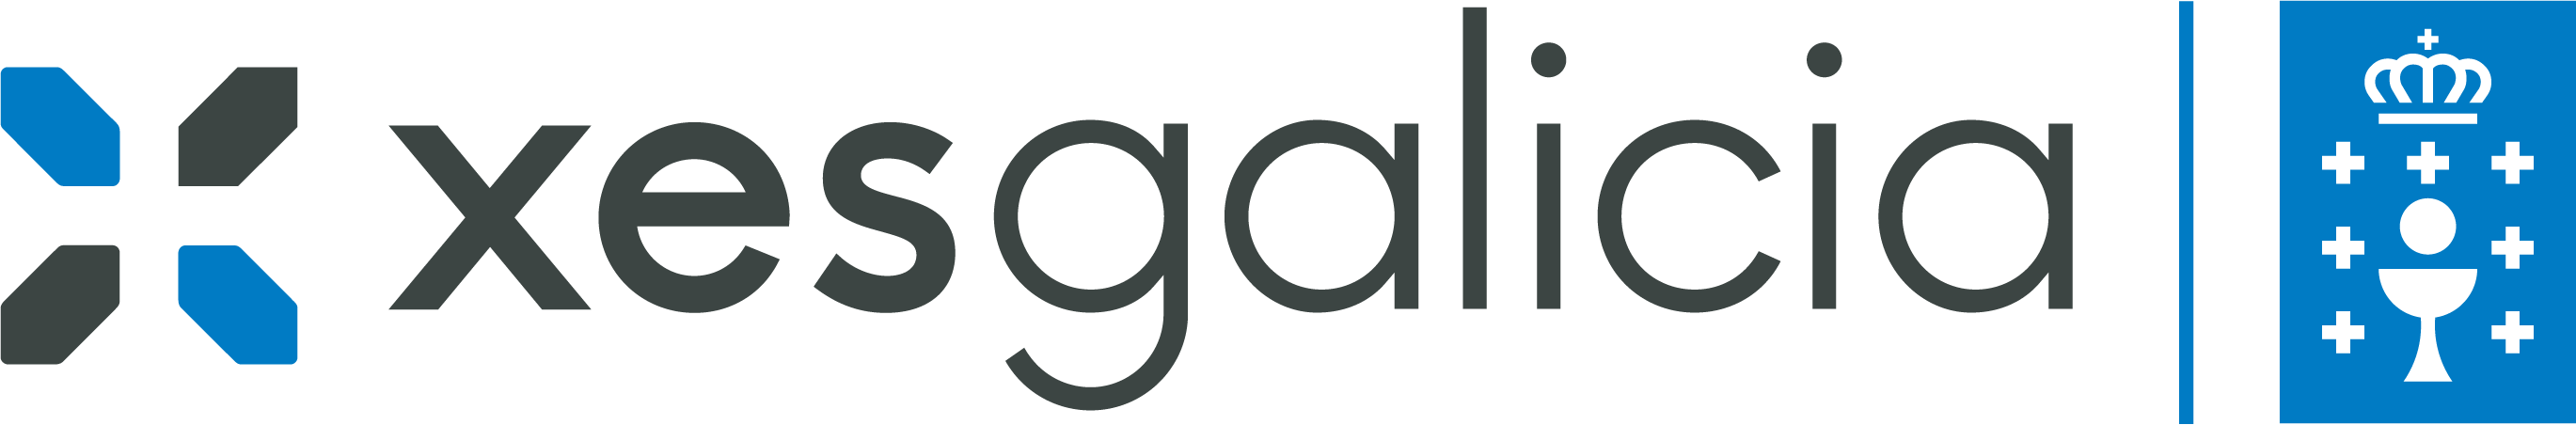 XesGalicia-logo (1)_0